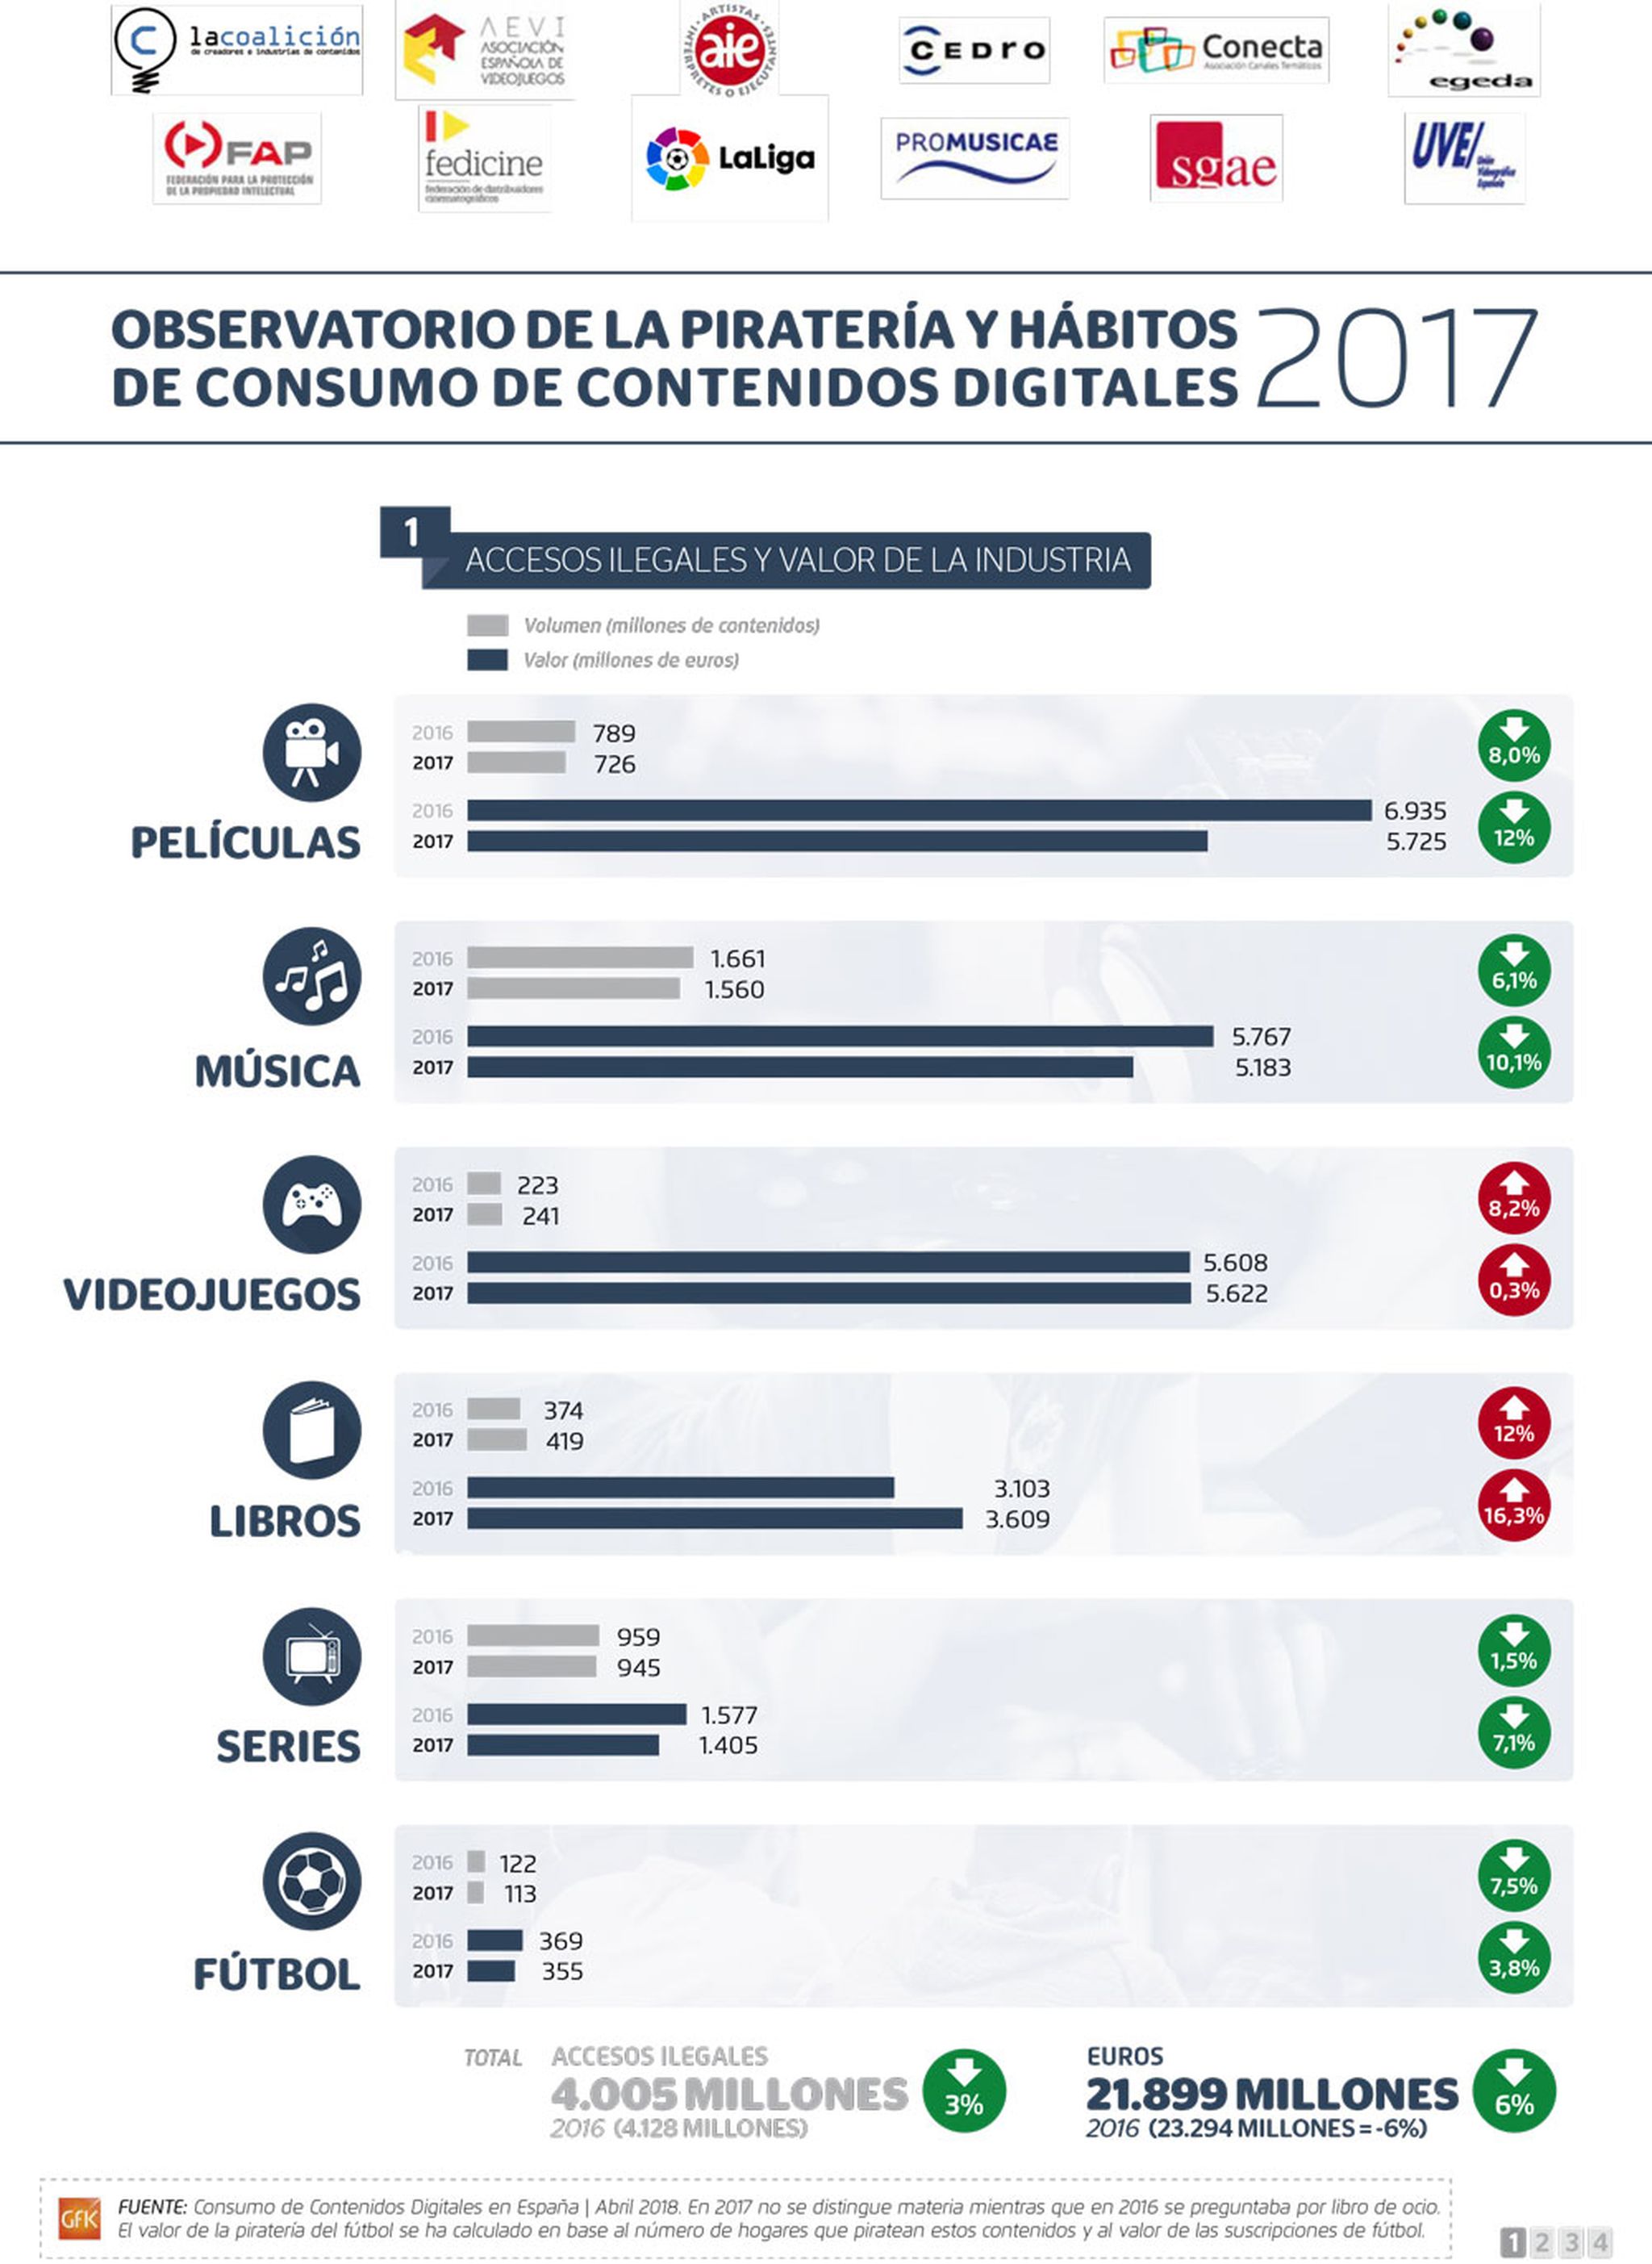 Observatorio de piratería y hábitos de consumo de contenidos digitales 2017